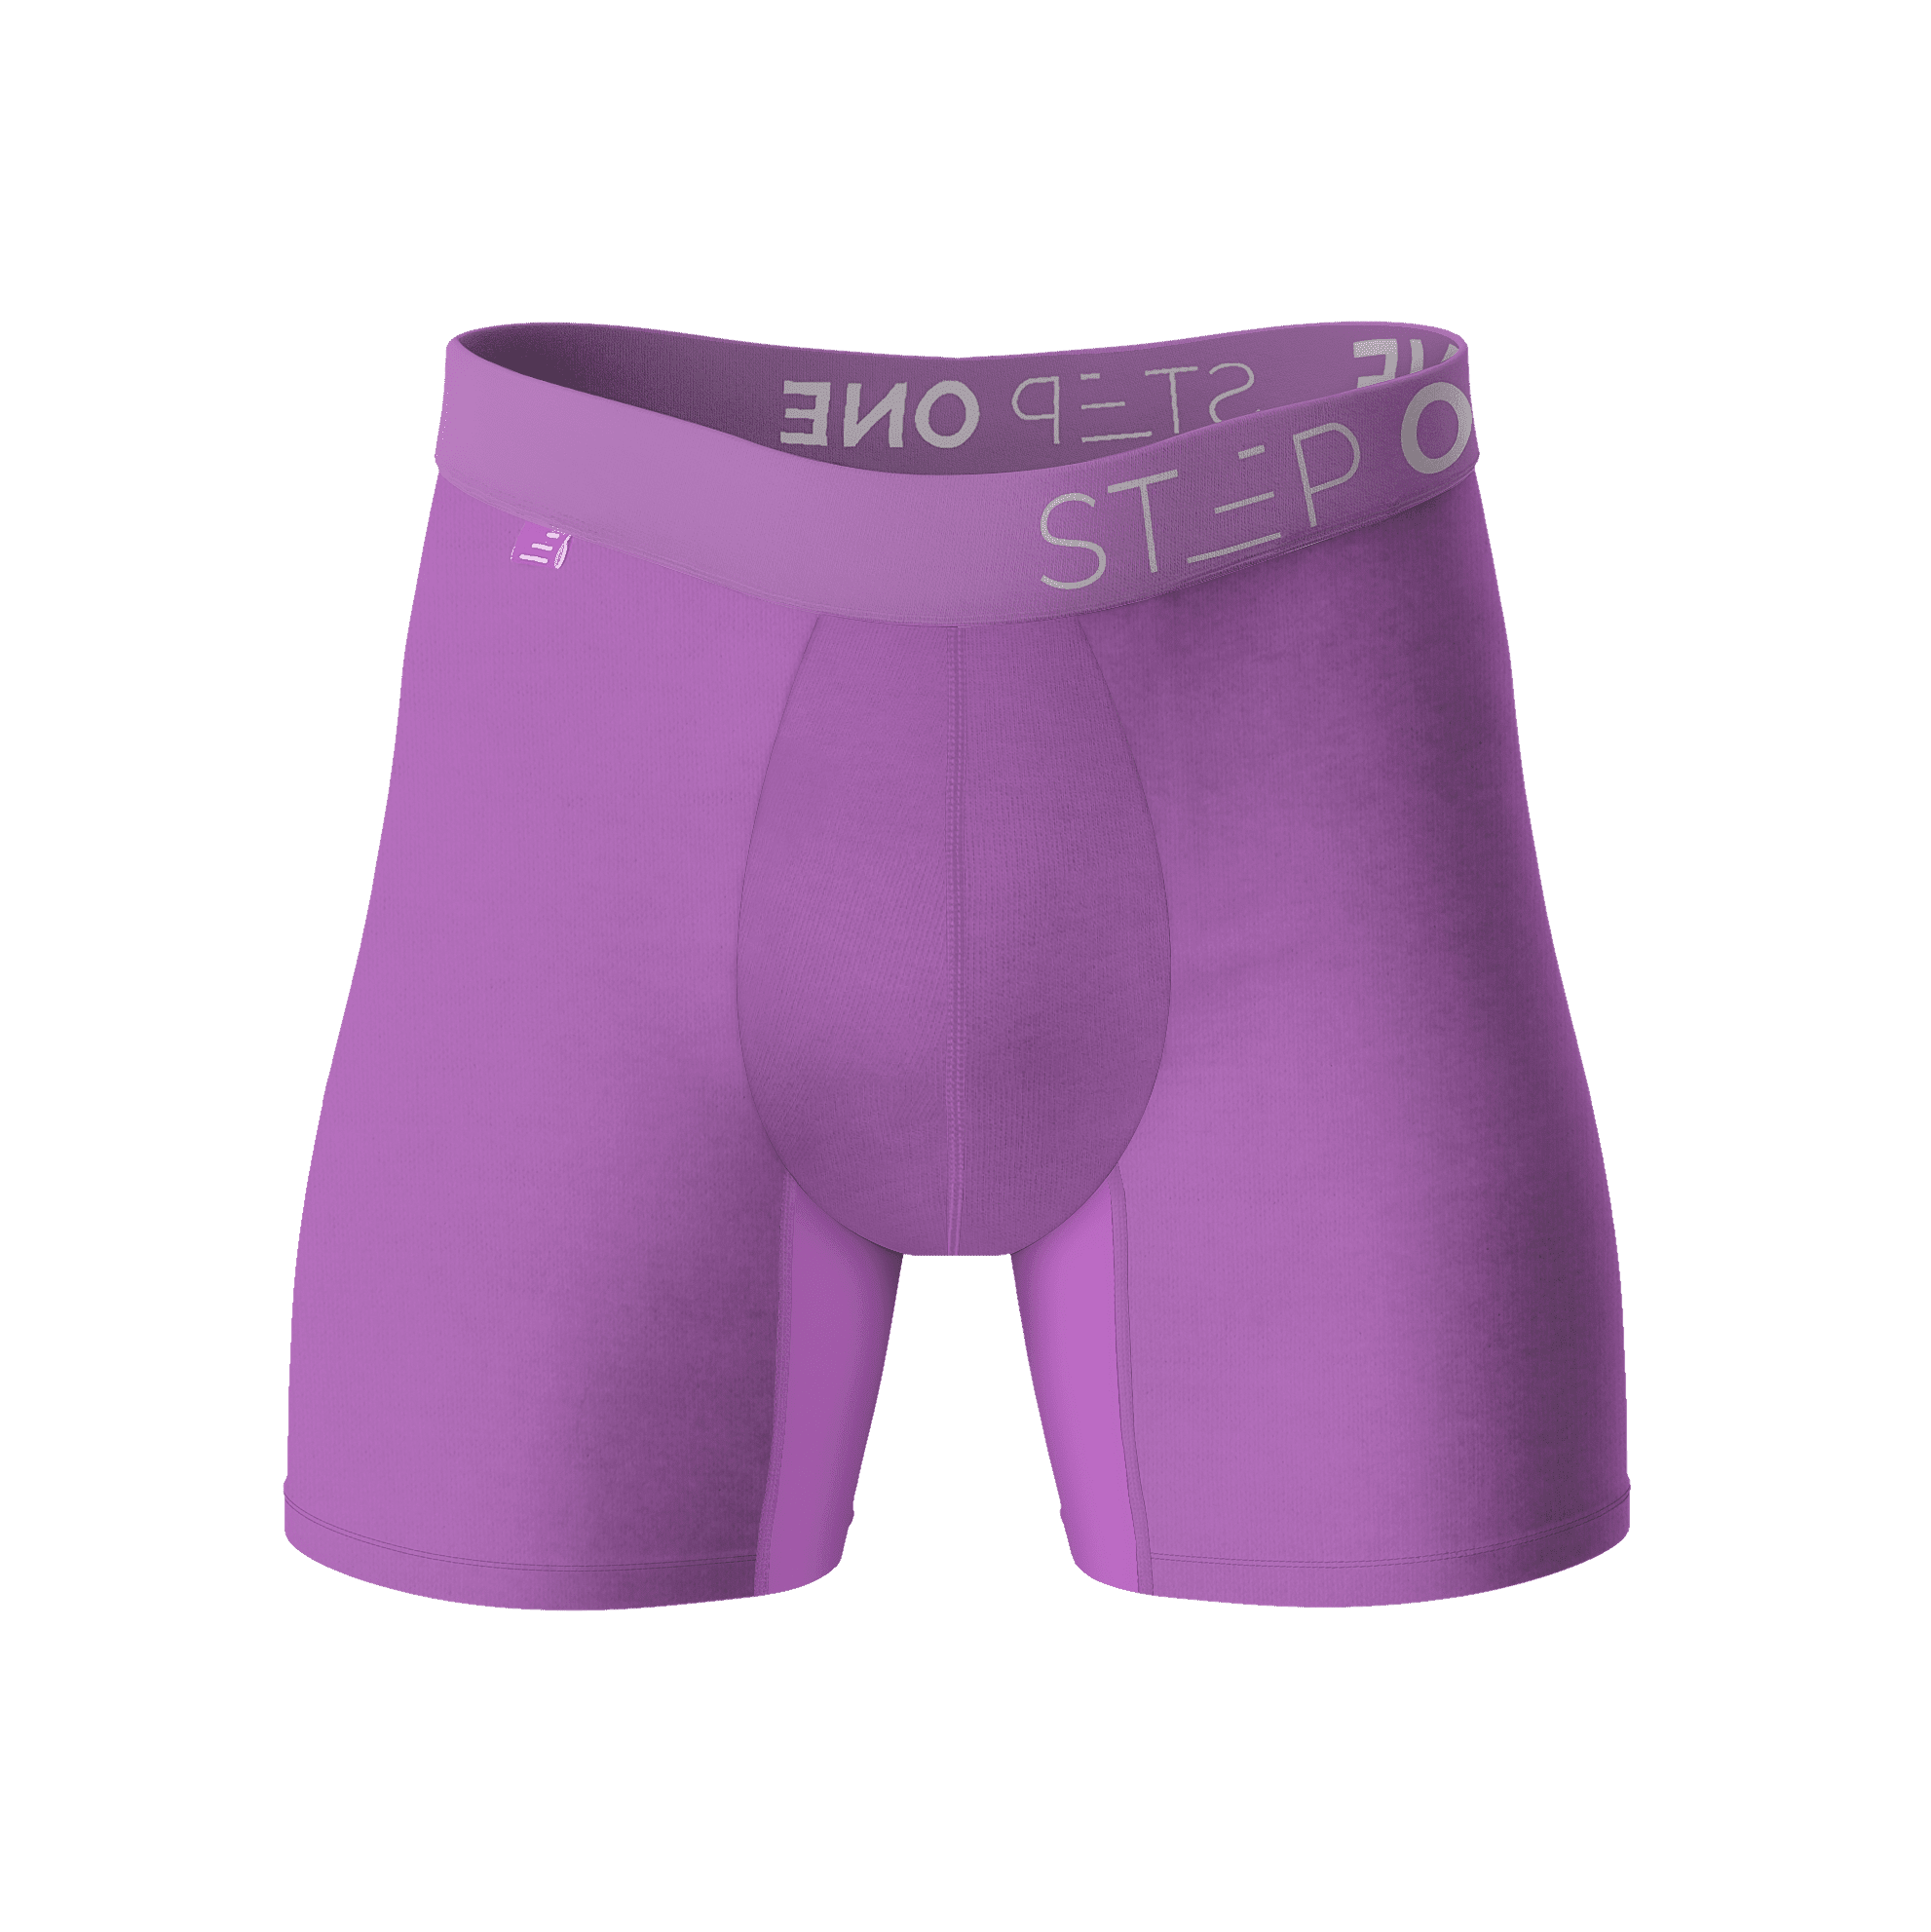  Buy Men's Underwear Online at Step One US